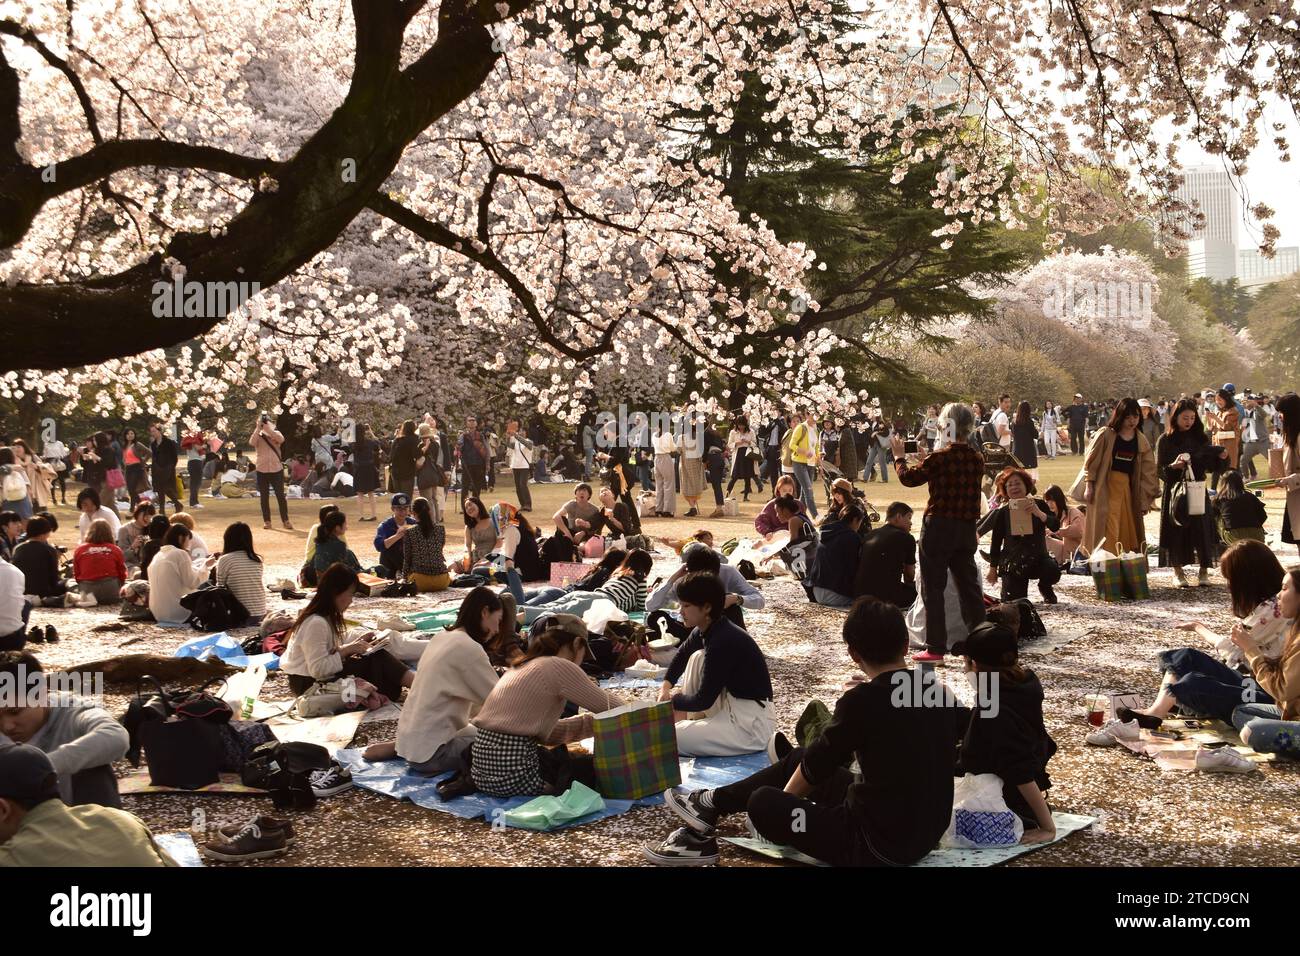 Ueno Park, Tokyo, Giappone - 29 marzo 2018: I giapponesi siedono sotto gli alberi sakura, si divertono durante il festival Hanami Foto Stock